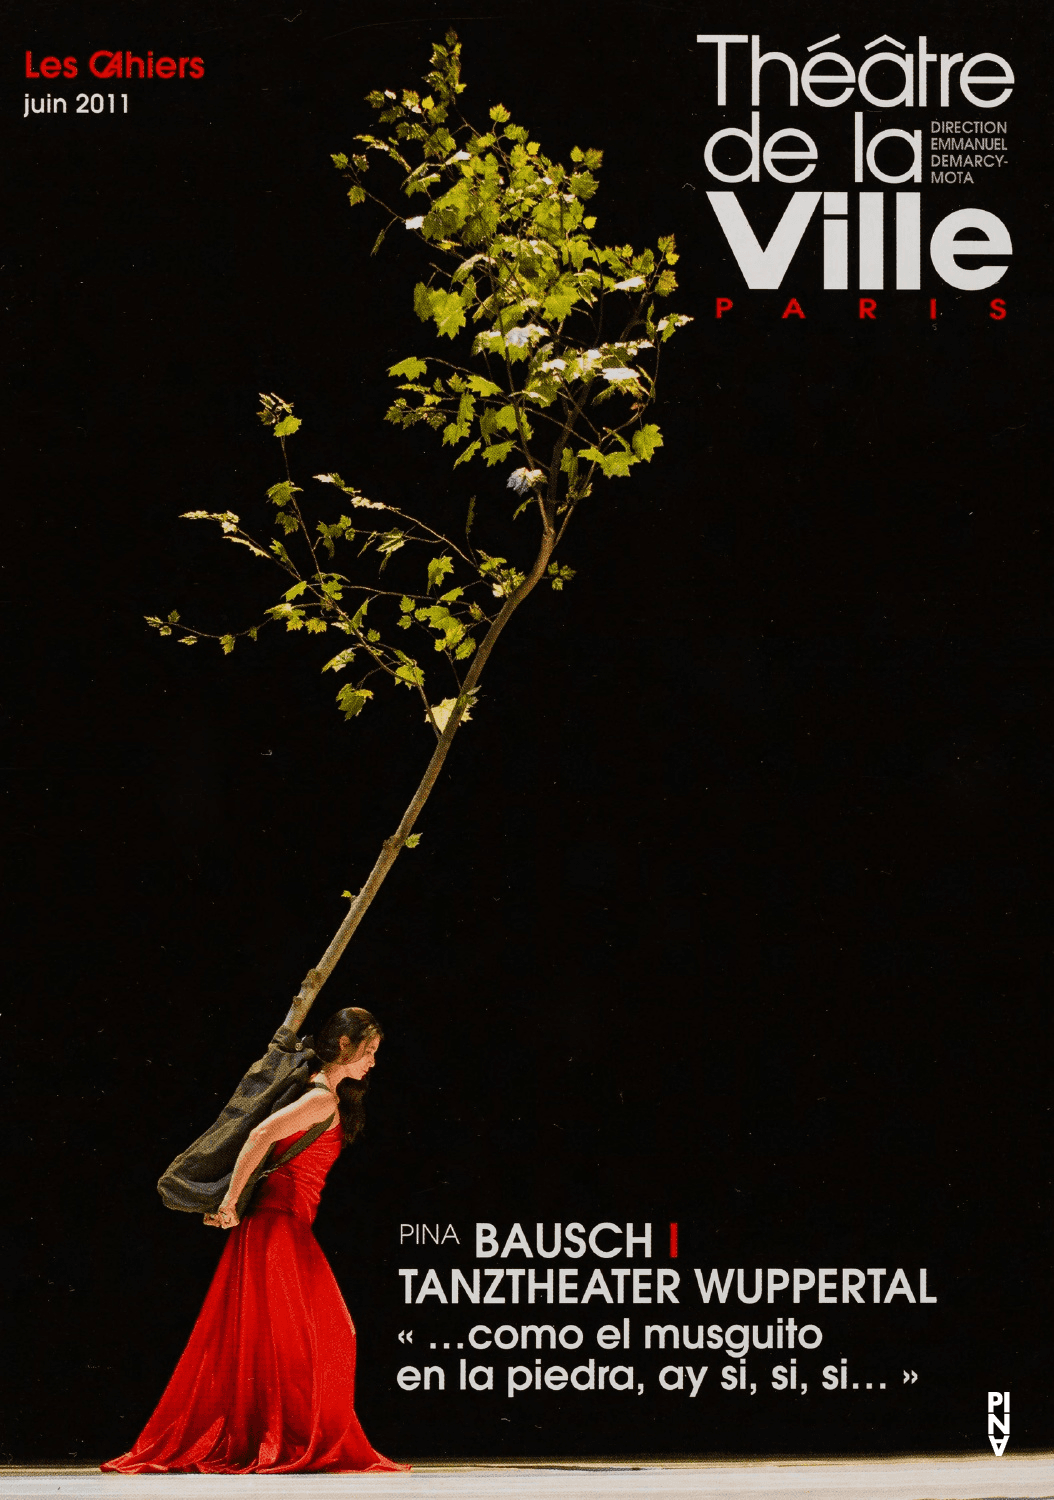 Programme pour « "... como el musguito en la piedra, ay si, si, si ..." (Comme la mousse sur la pierre) » de Pina Bausch avec Tanztheater Wuppertal à Paris, 22 juin 2011 – 8 juil. 2011